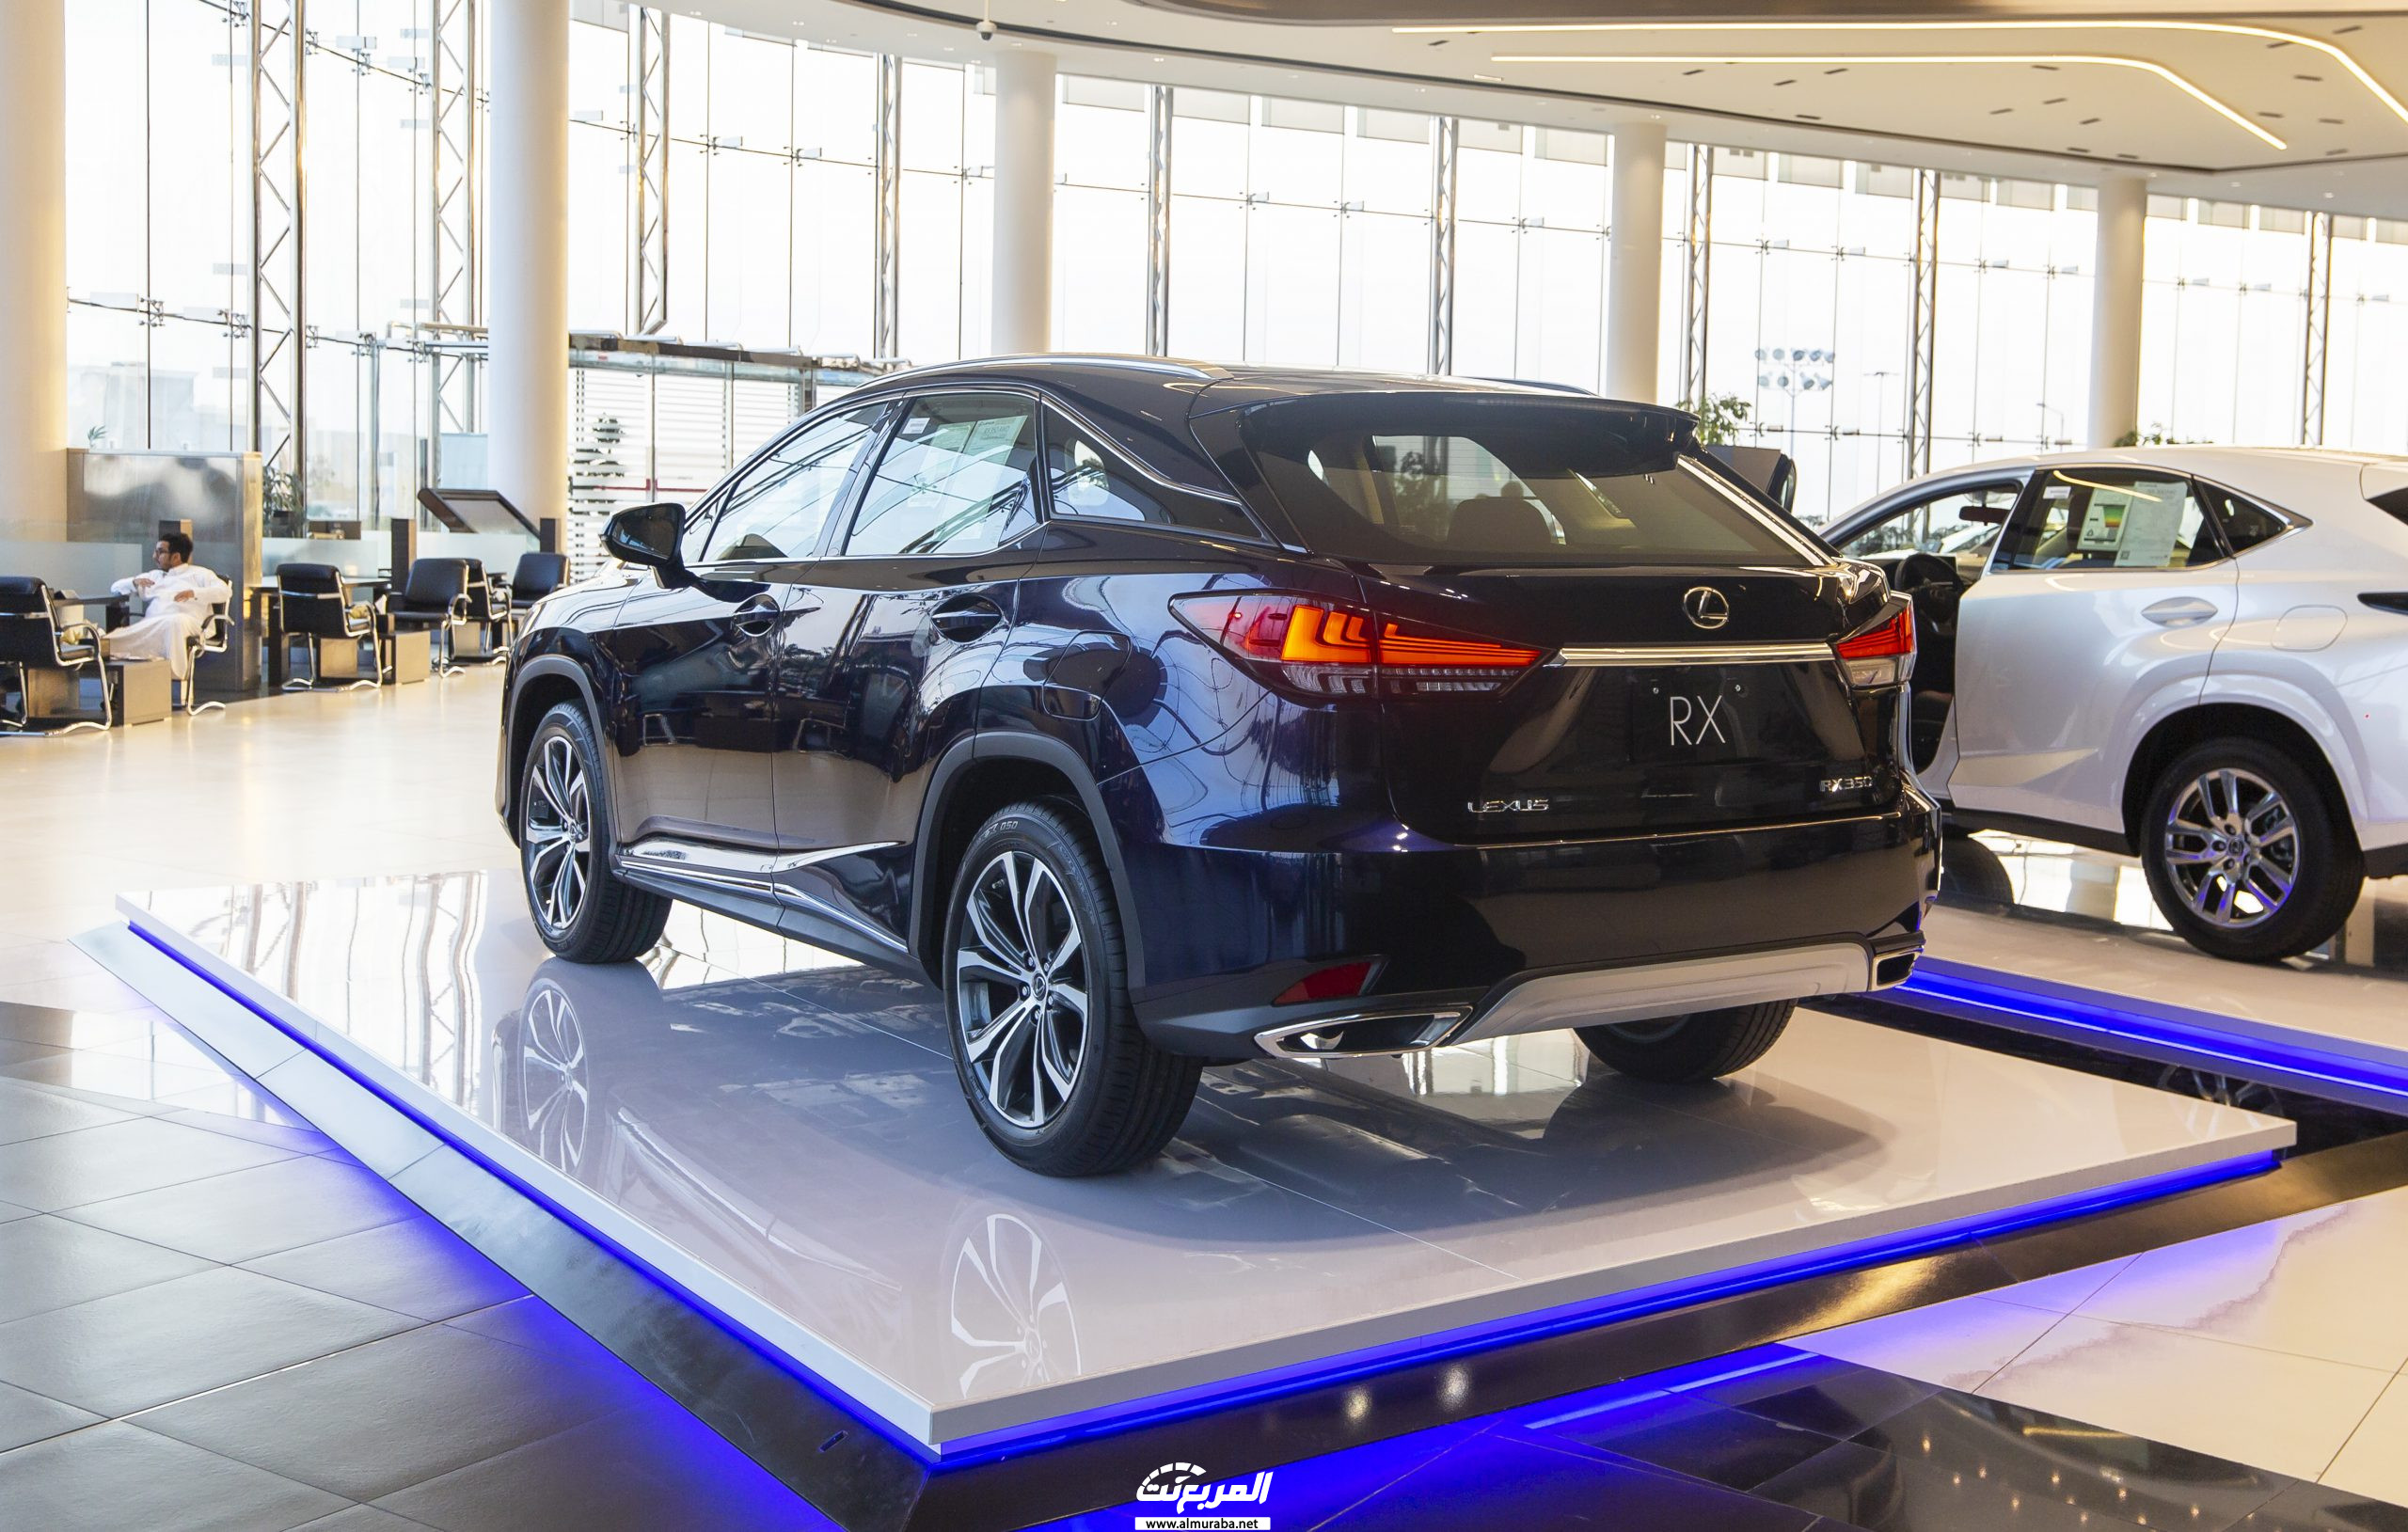 صور لكزس ار اكس 2020 في جلسة تصوير خاصة Lexus RX 8